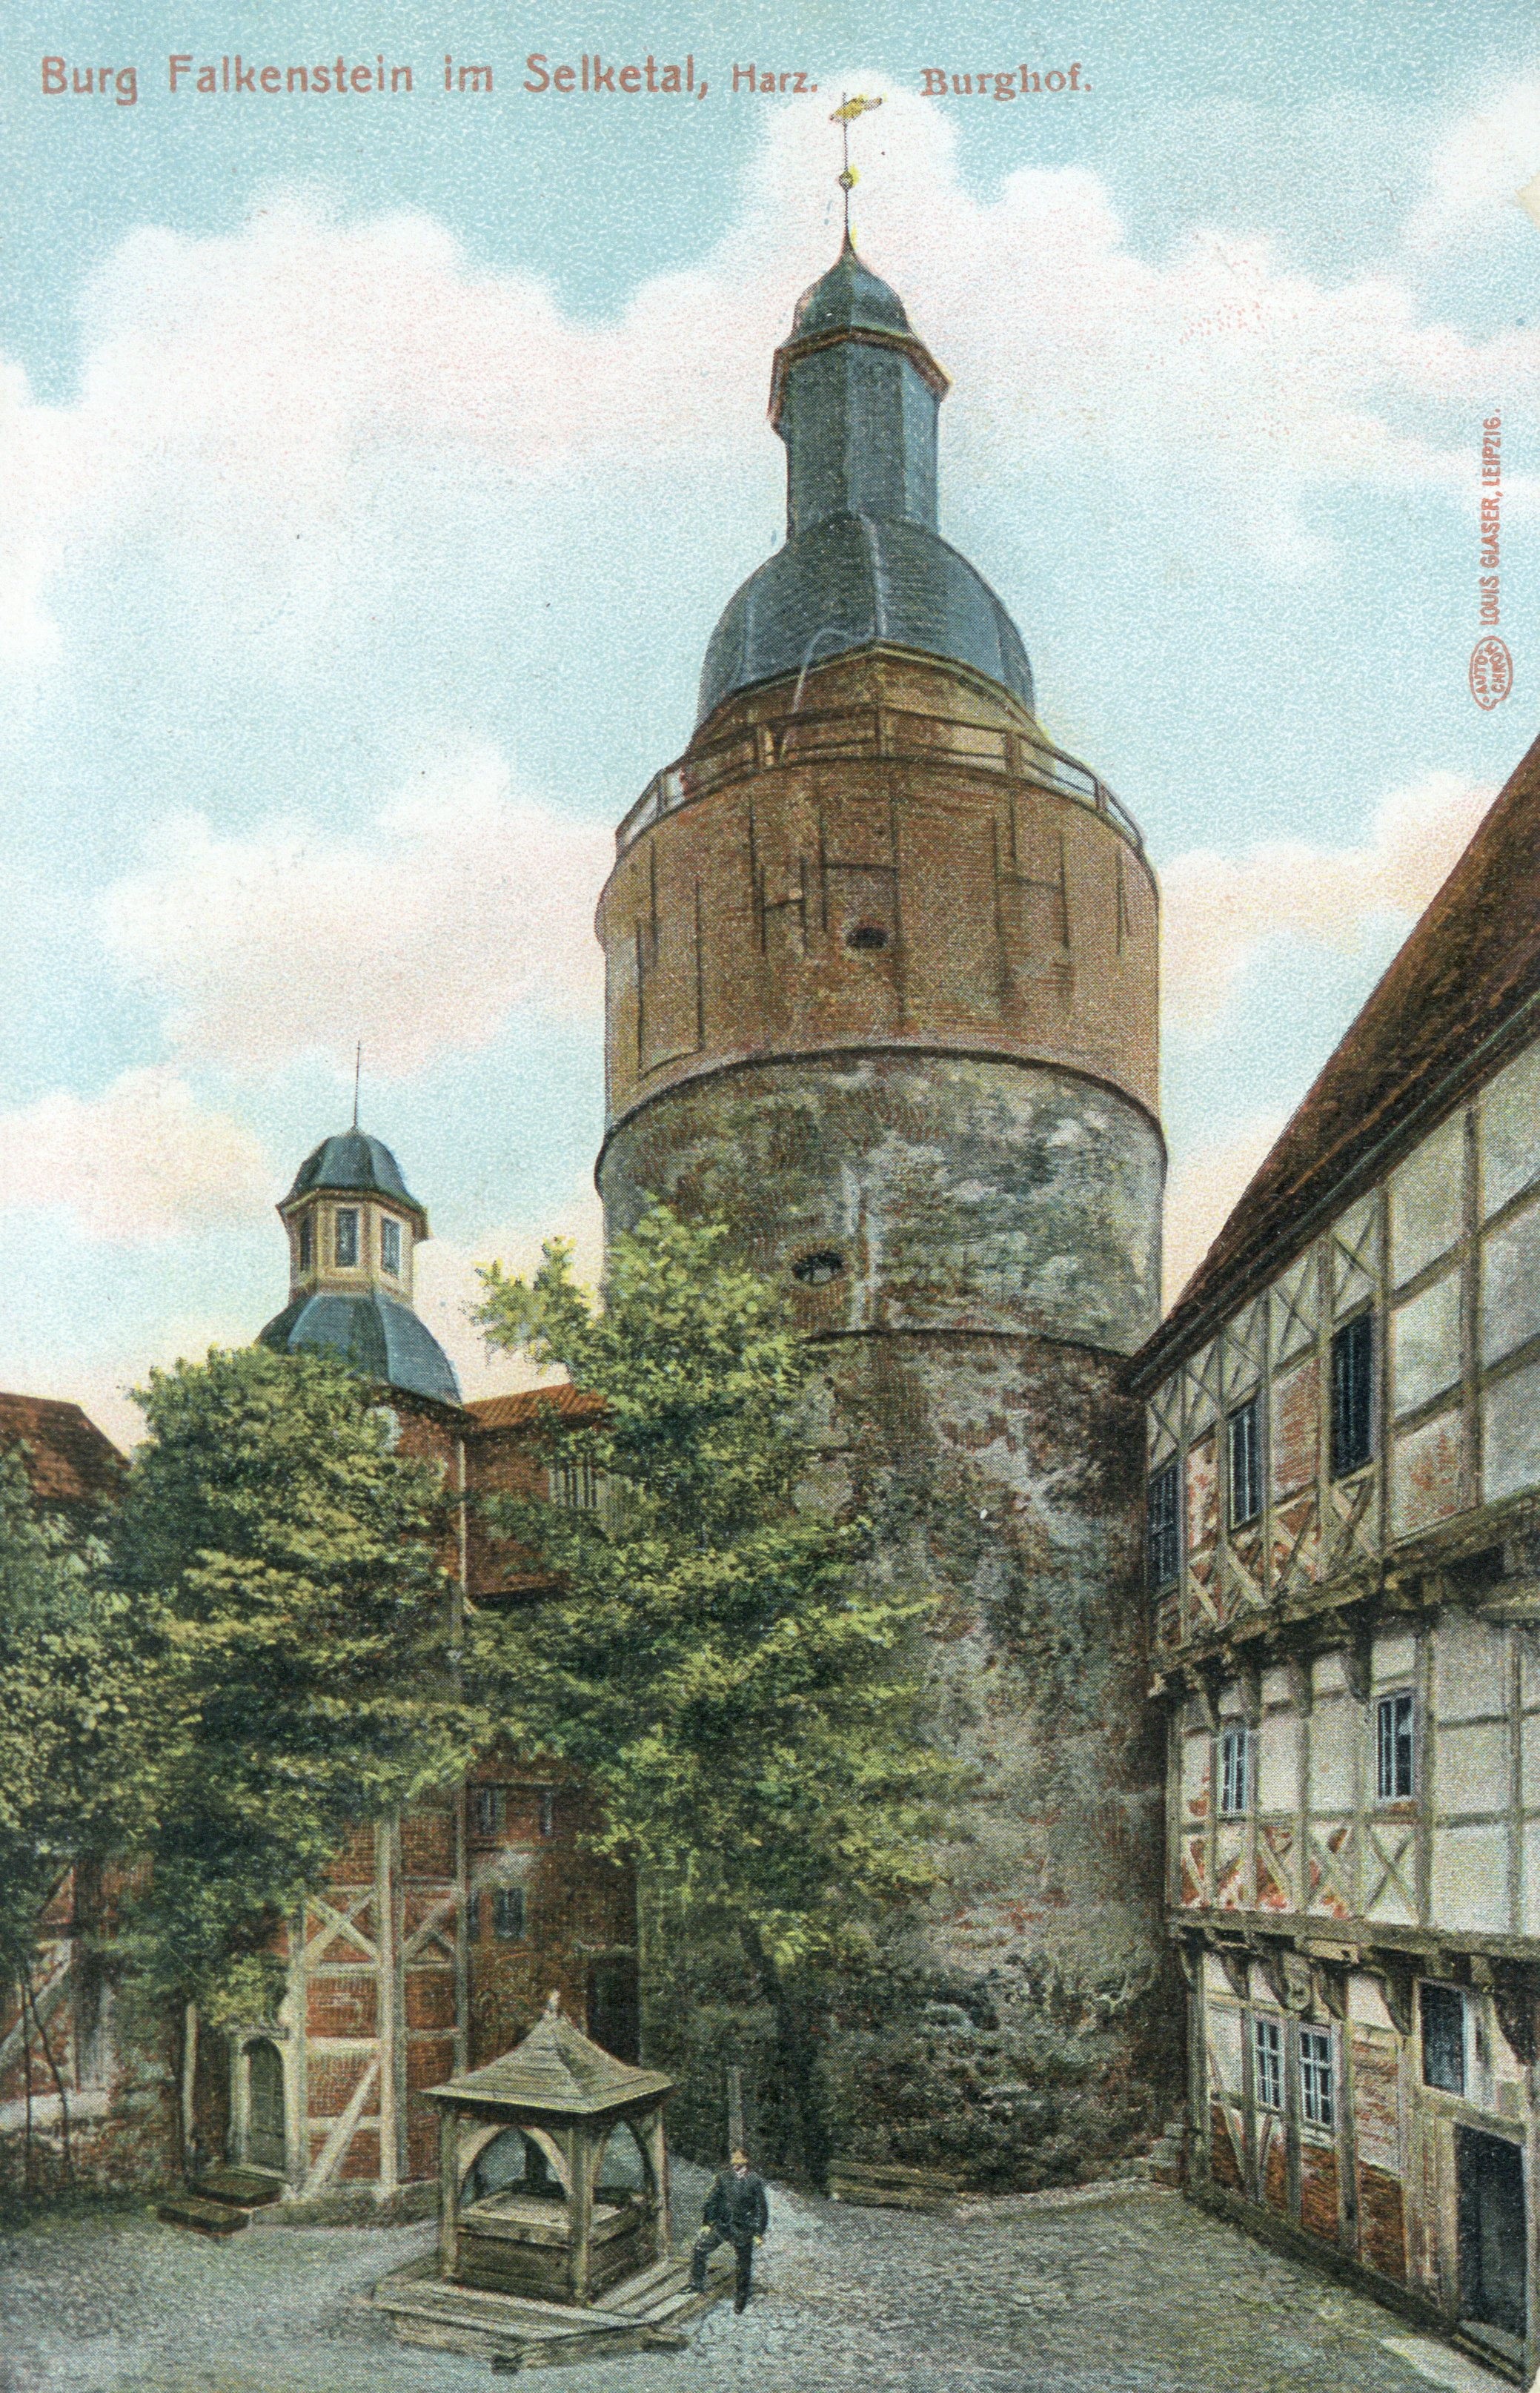 Ansichtskarte Burg Falkenstein im Selketal, Harz. Burghof. (Kulturstiftung Sachsen-Anhalt CC BY-NC-SA)